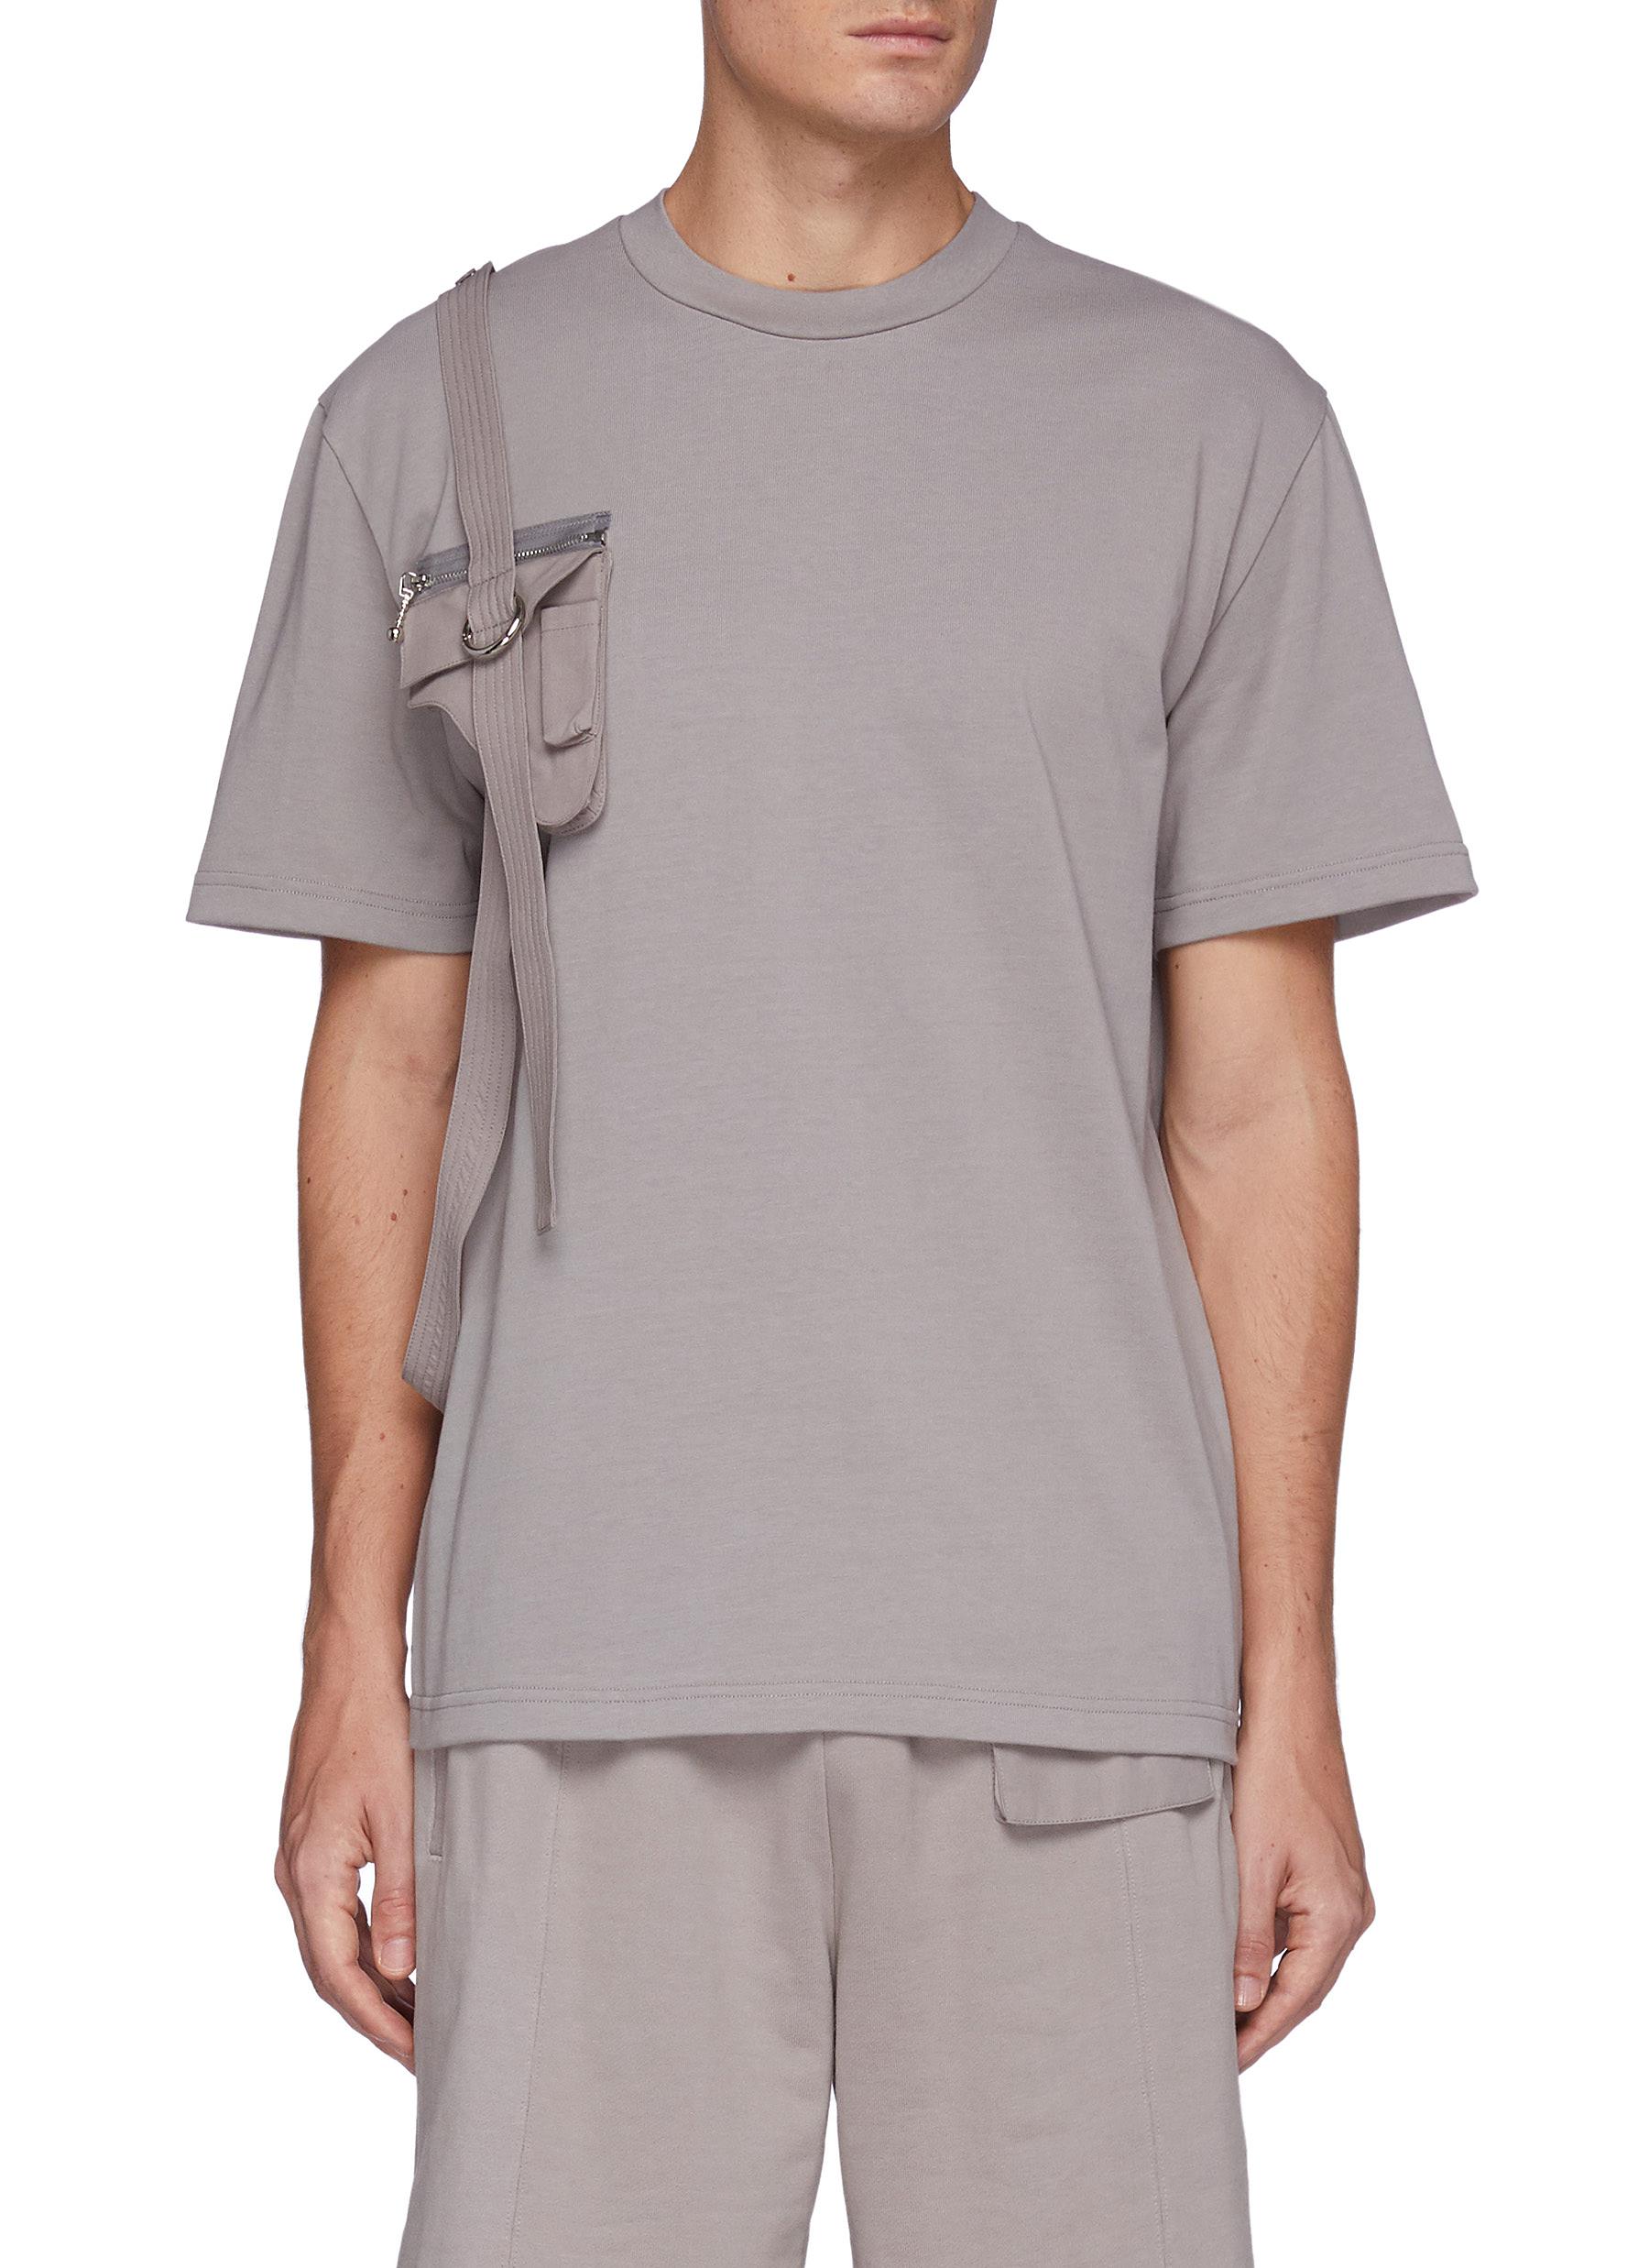 Gun Pouch Flap Pocket Harness Detail Overlay Cotton T-shirt